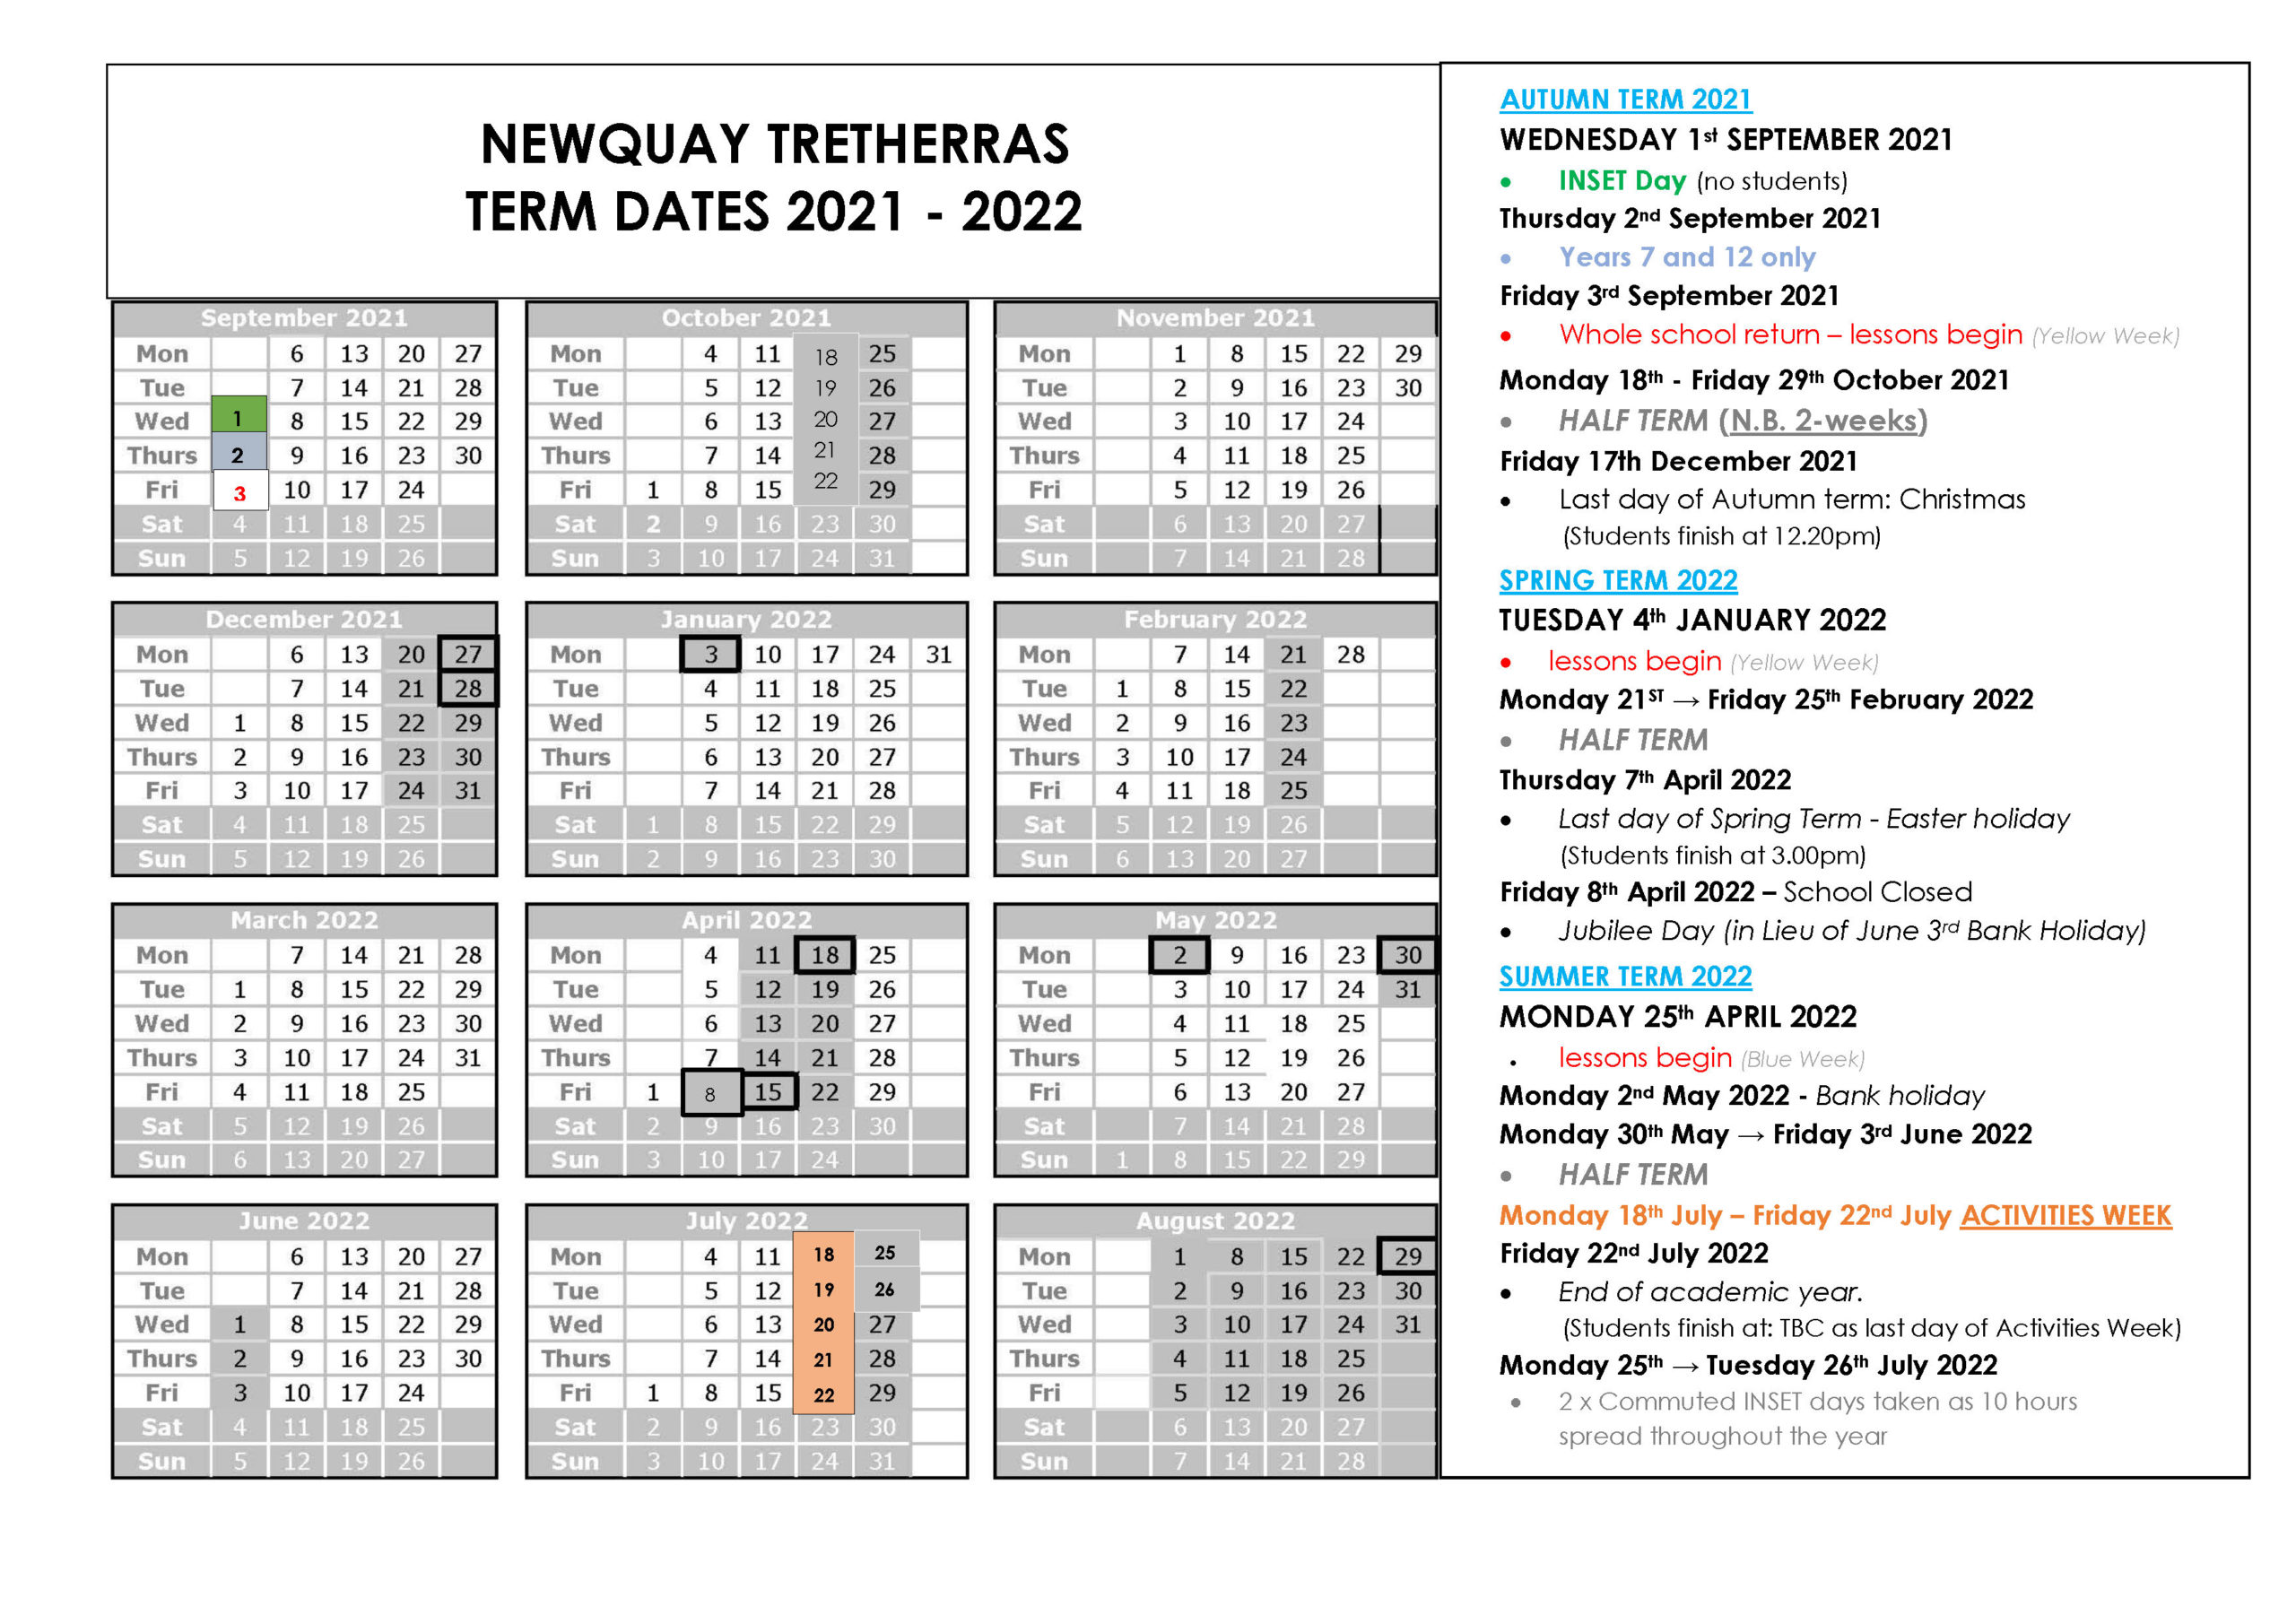 Academic Calendar For Newquay Tretherras For 21 22